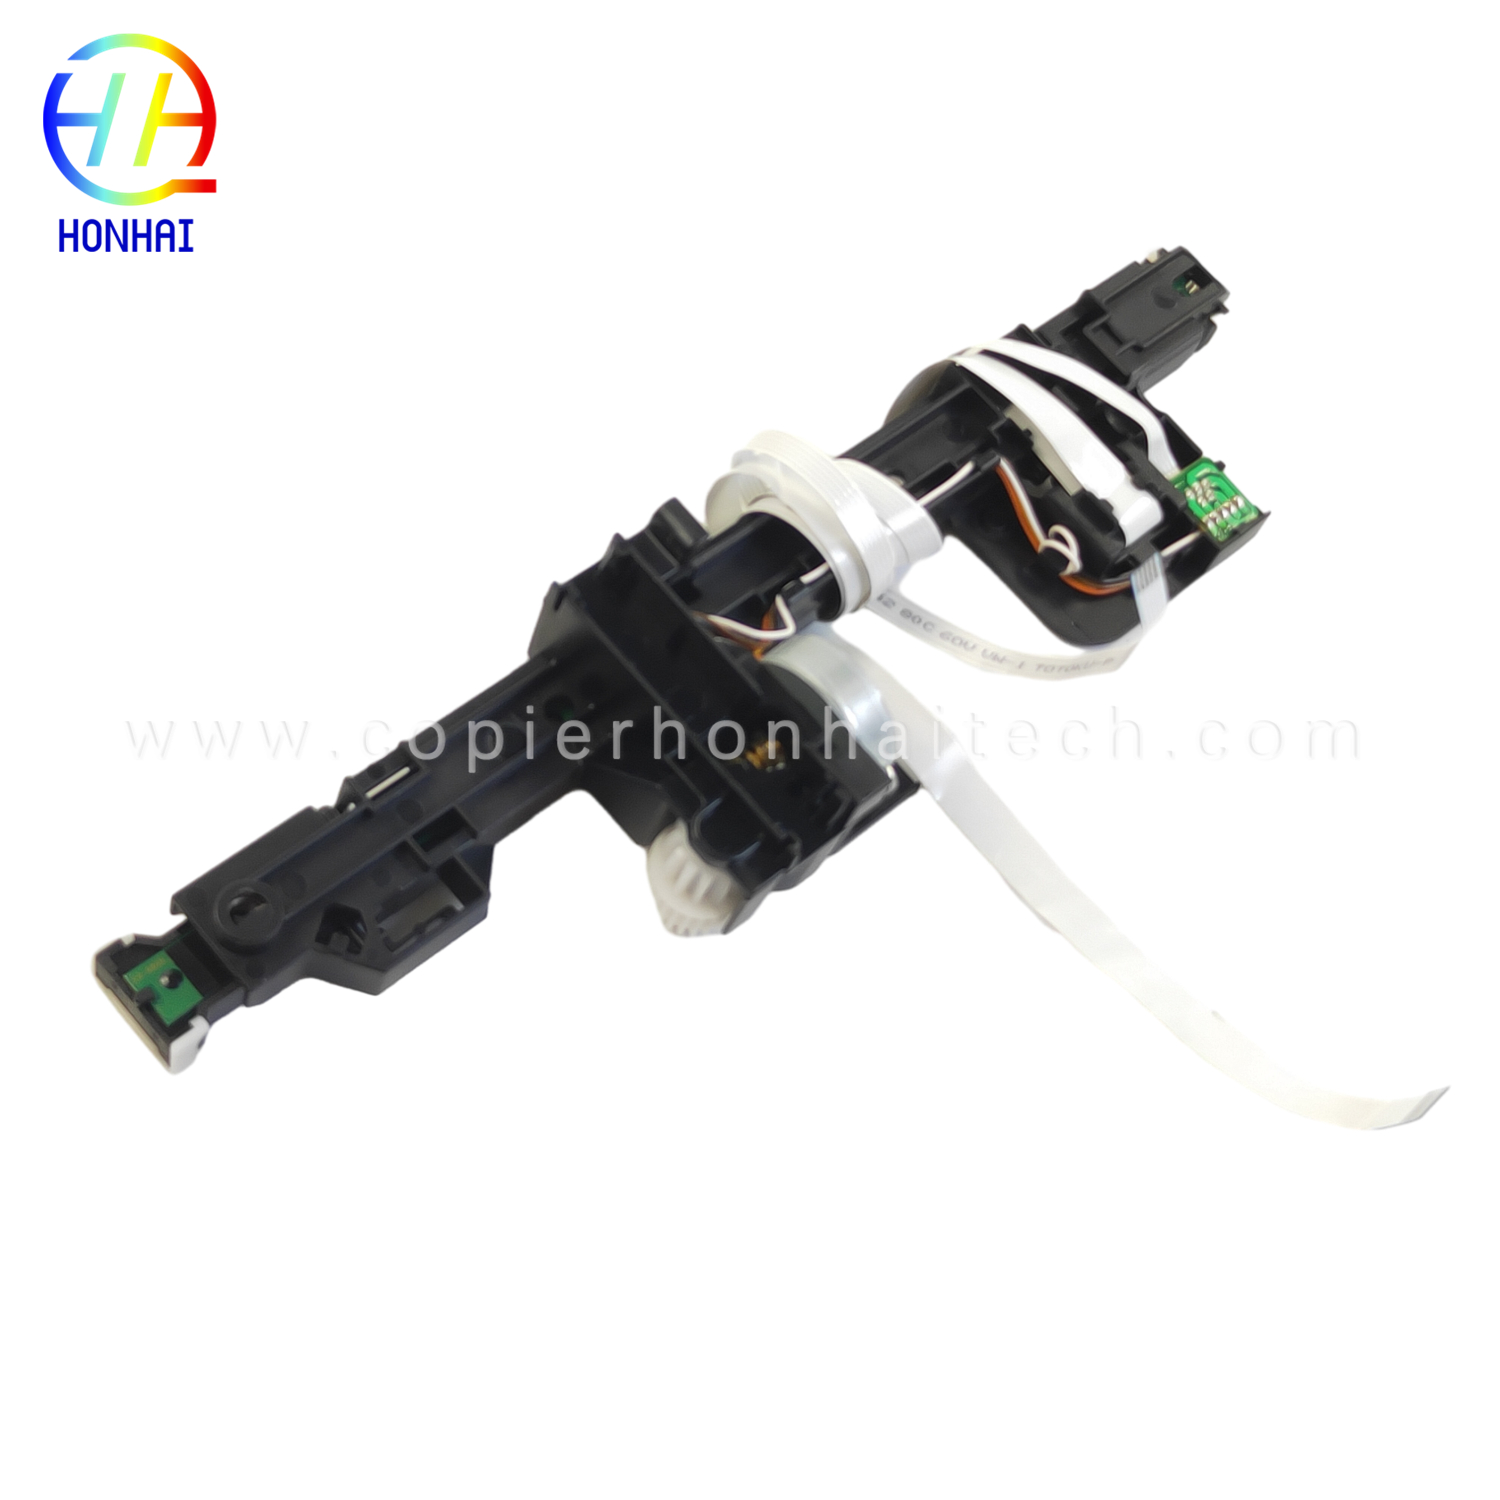 https://www.copierhonhaitech.com/scanner-flex-cable-for-epson-l3110-l3210-3150-l3250-product/